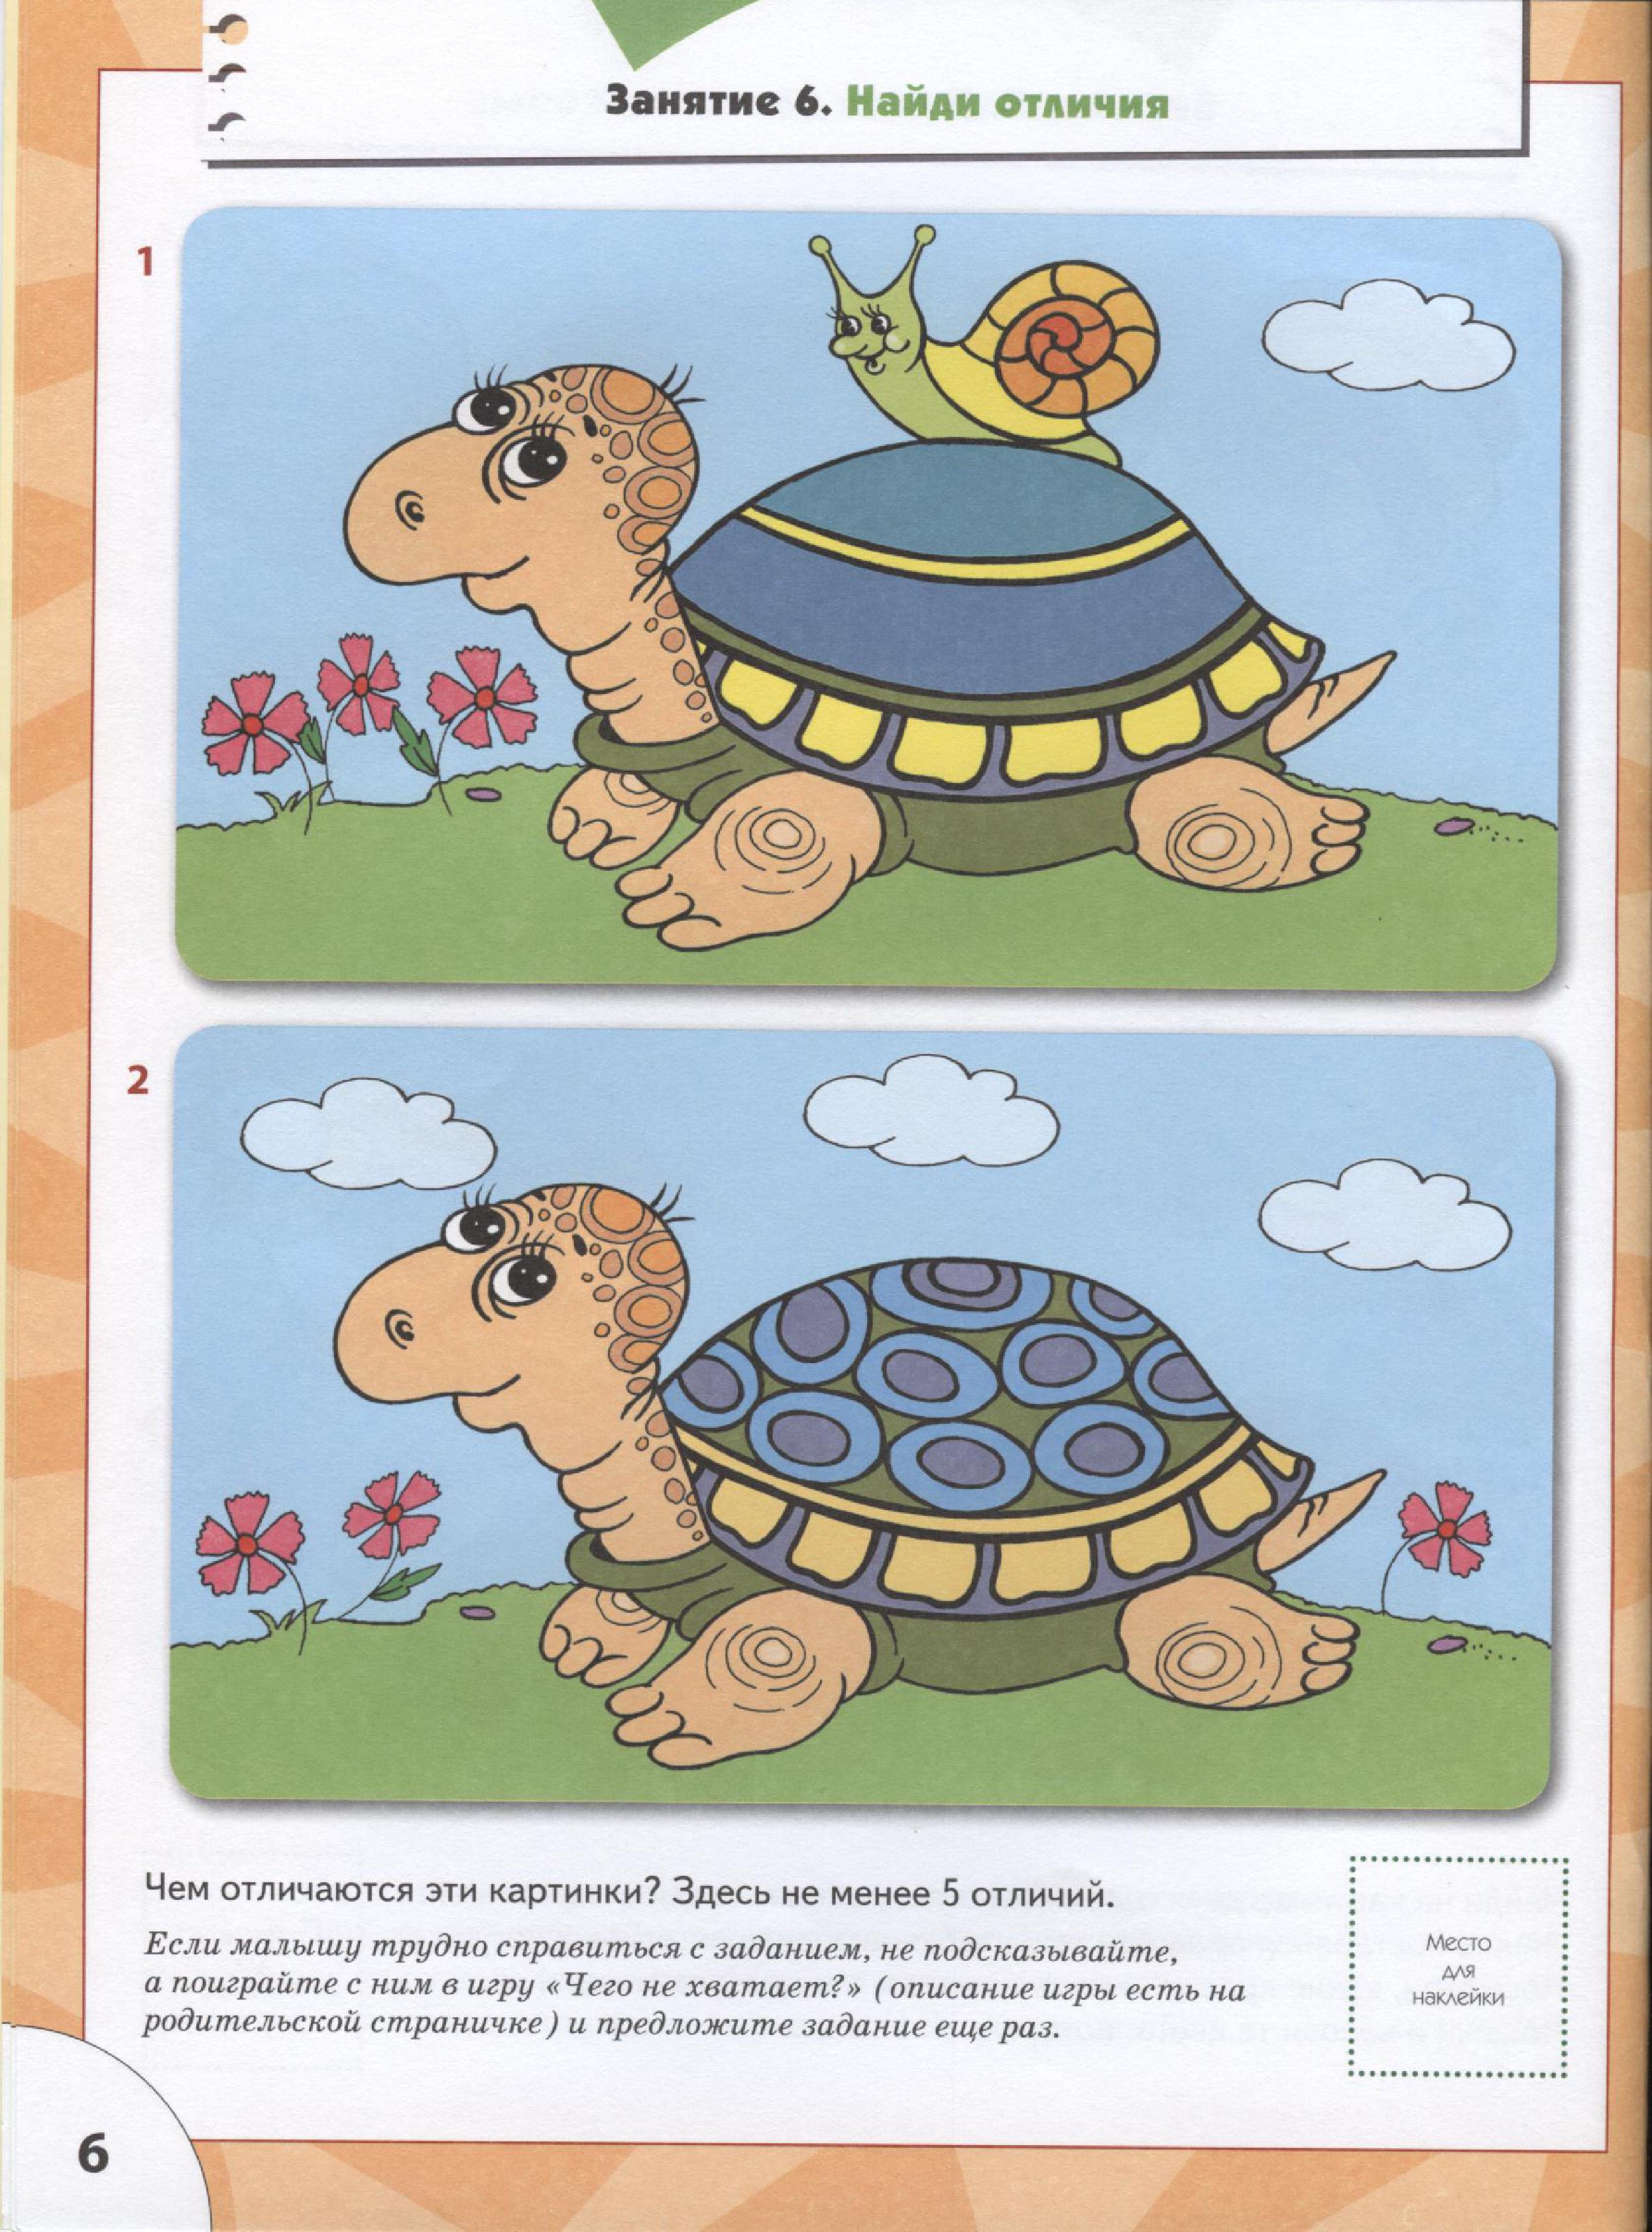 Упражнение черепашка. Задания с черепахами для дошкольников. Развивающие занятия для малышей. Занятия для детей 3 лет для развития. Обучающие задания для детей 3-4 лет.